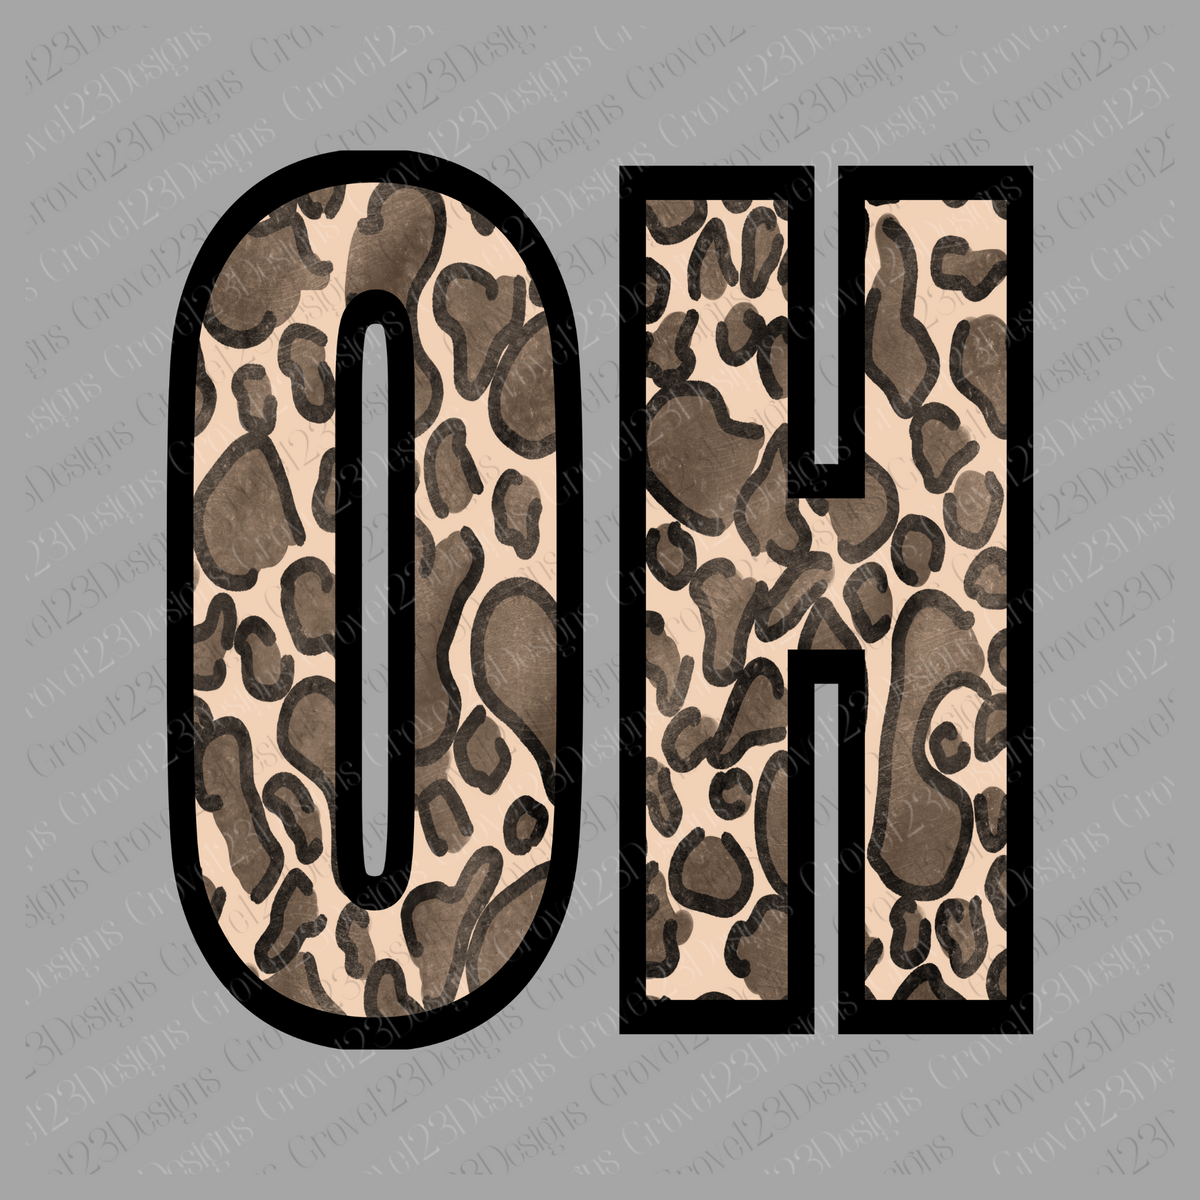 OH Ohio Leopard Design